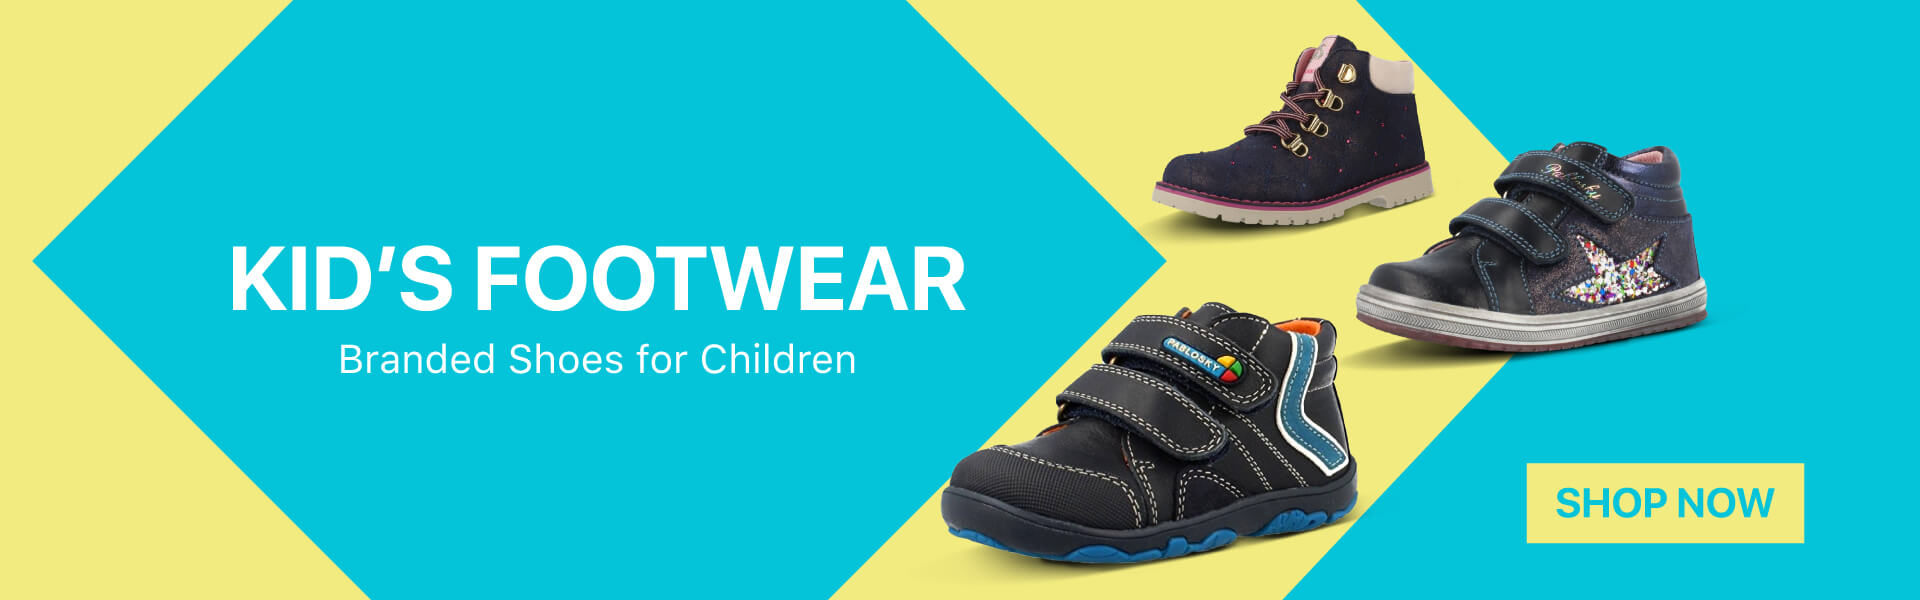 40-off-on-kids-footwear